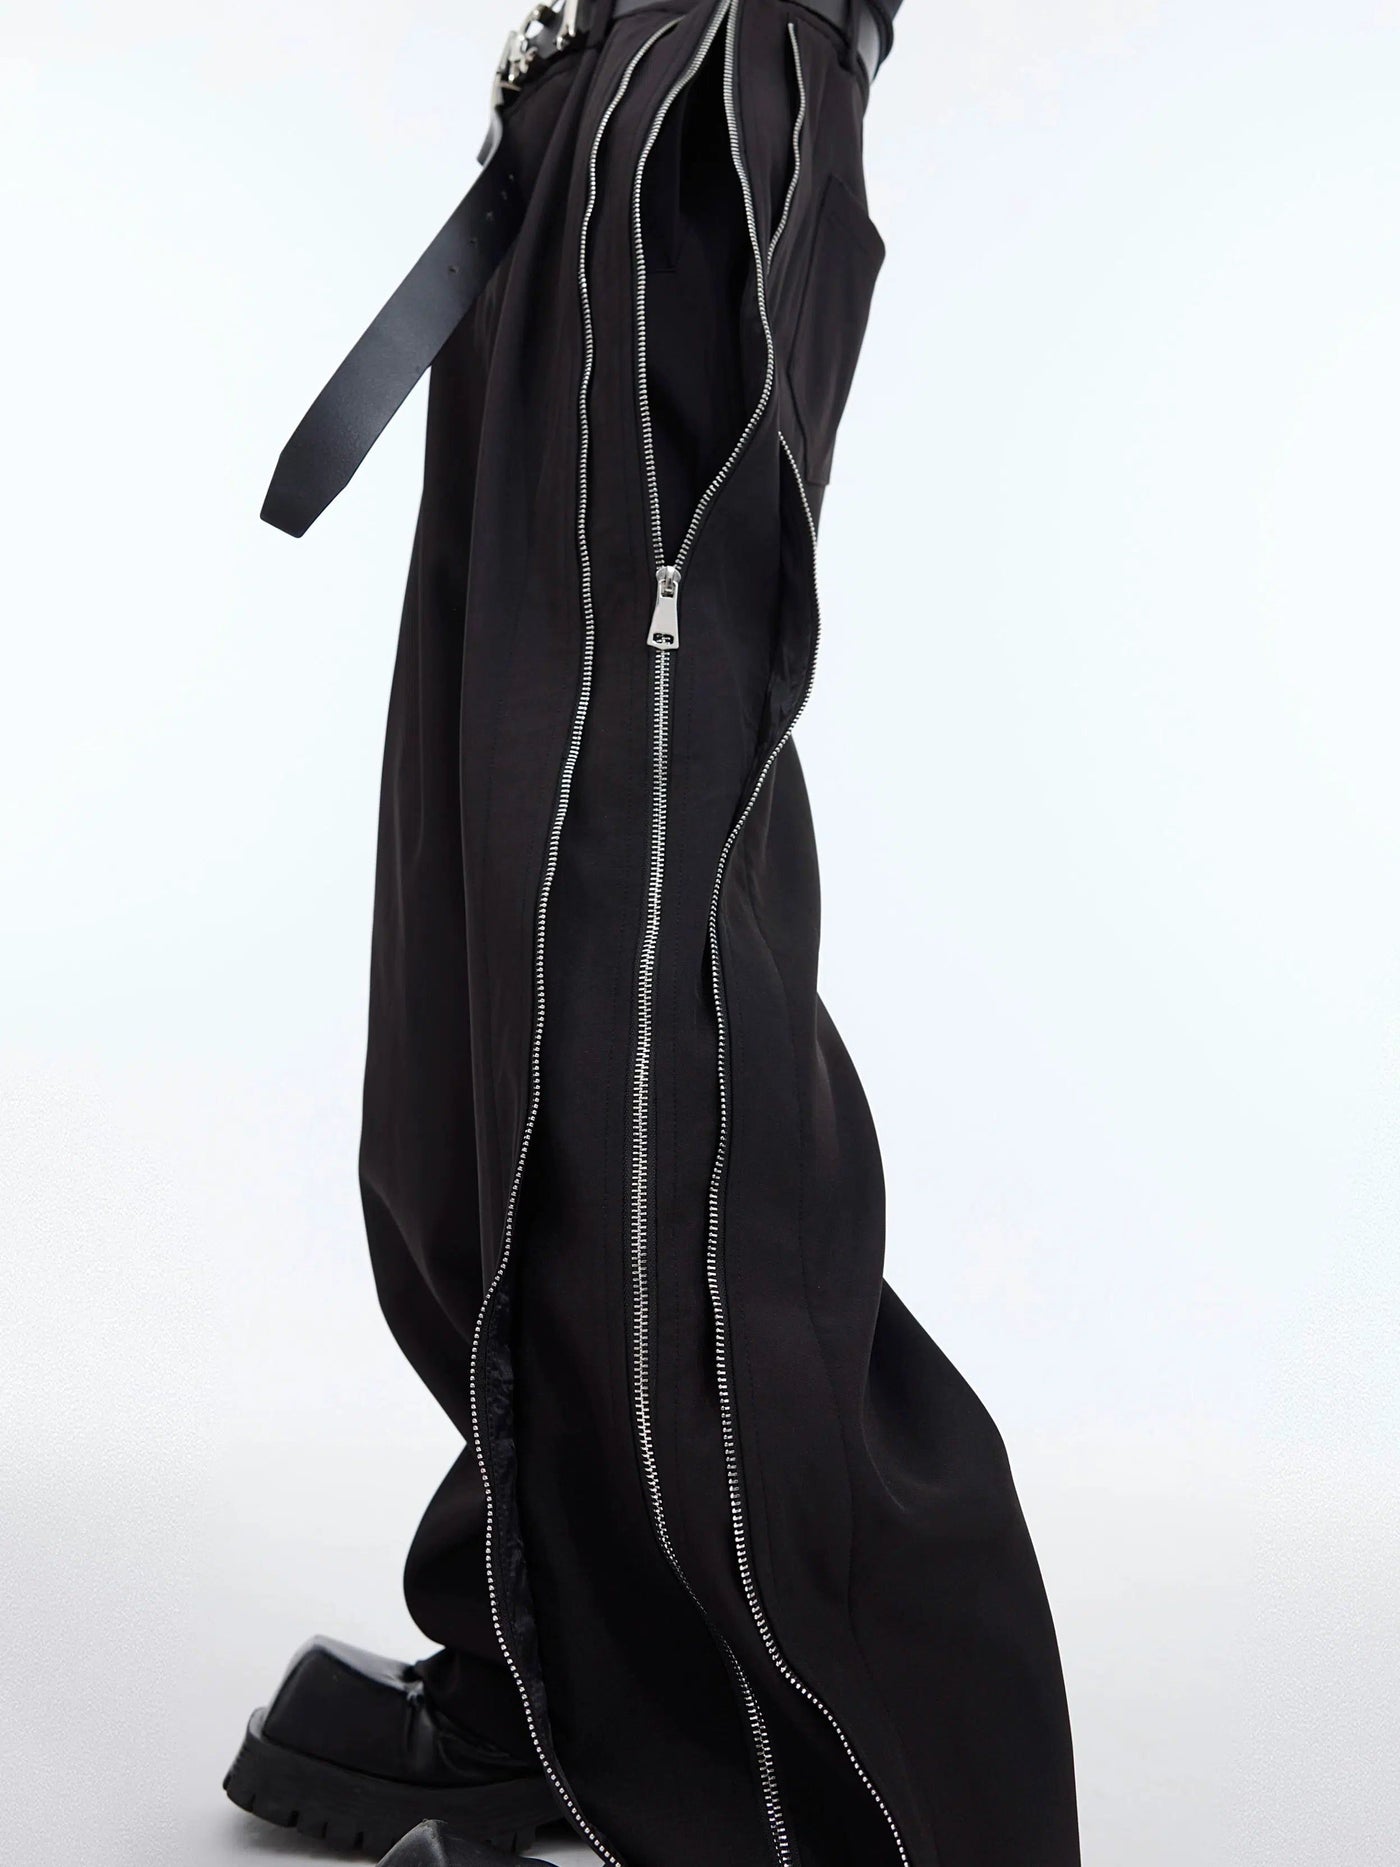 Multi-Zip Sides Pants Korean Street Fashion Pants By Argue Culture Shop Online at OH Vault